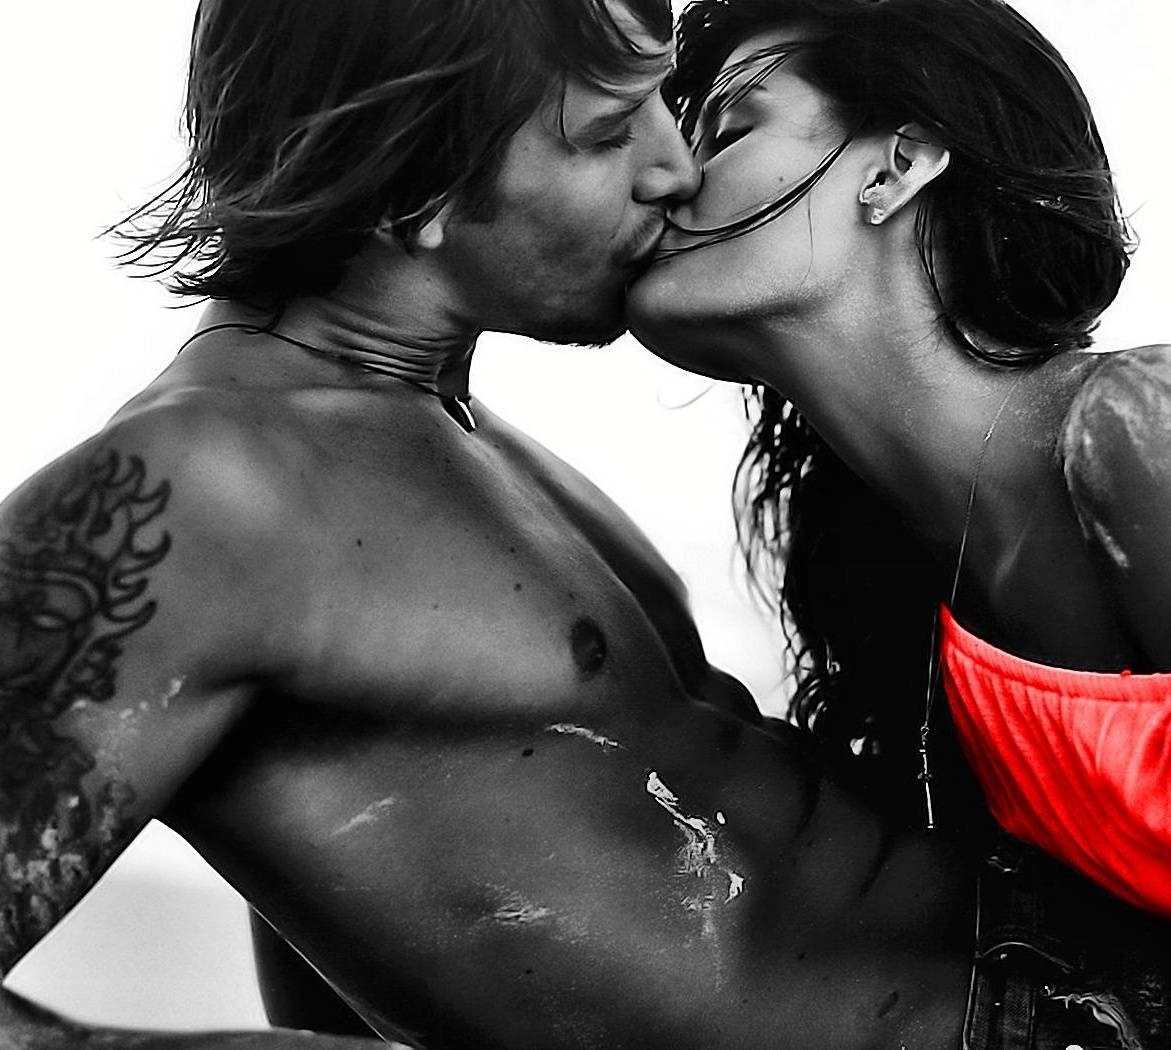 картинки любимому страстные поцелуи